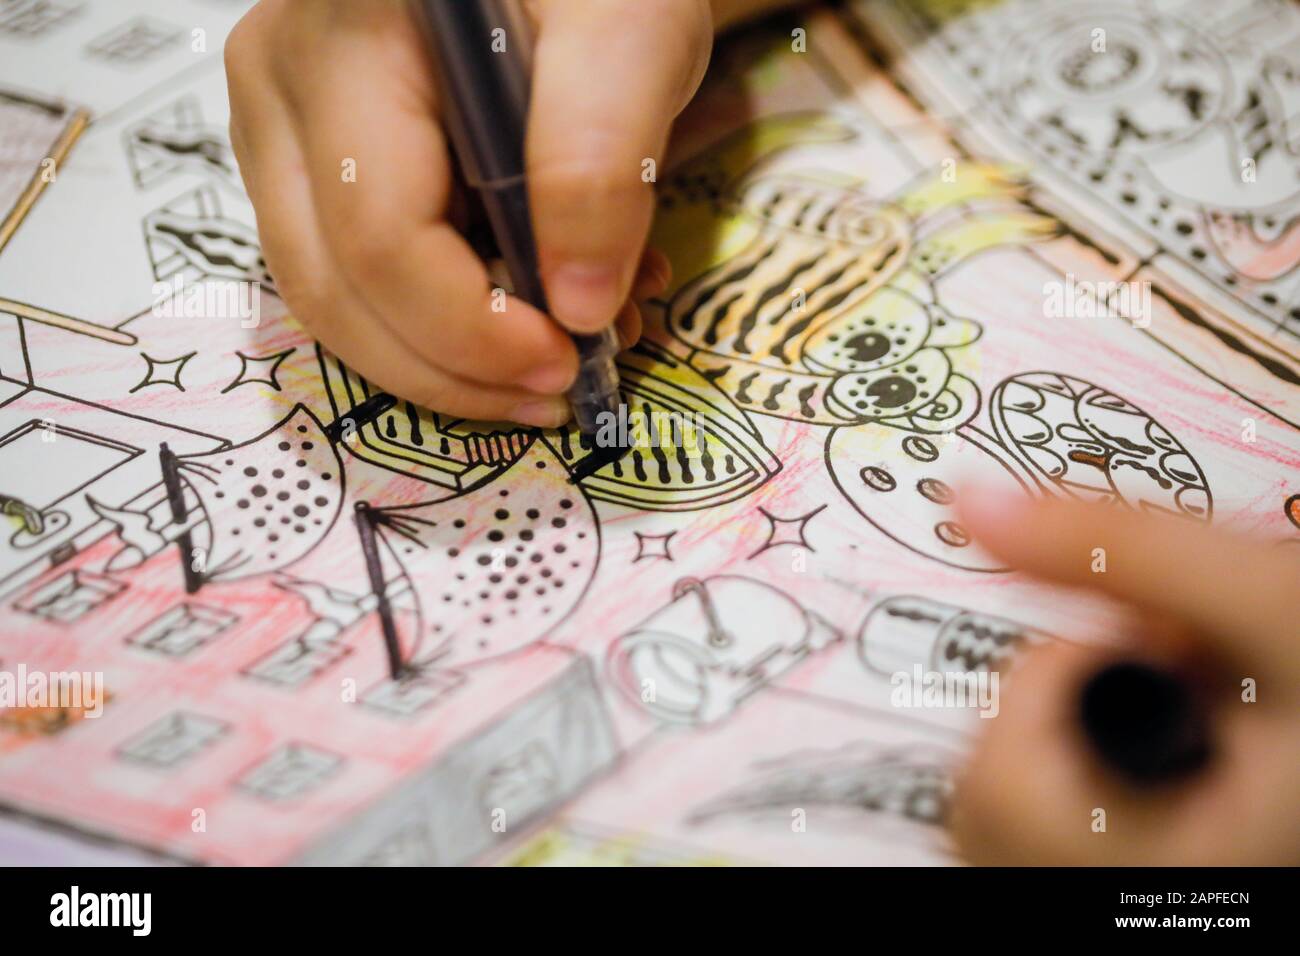 Faible profondeur de champ (mise au point sélective) et image macro avec la main d'une petite fille utilisant un sharpie pour dessiner sur un livre de coloriage. Banque D'Images